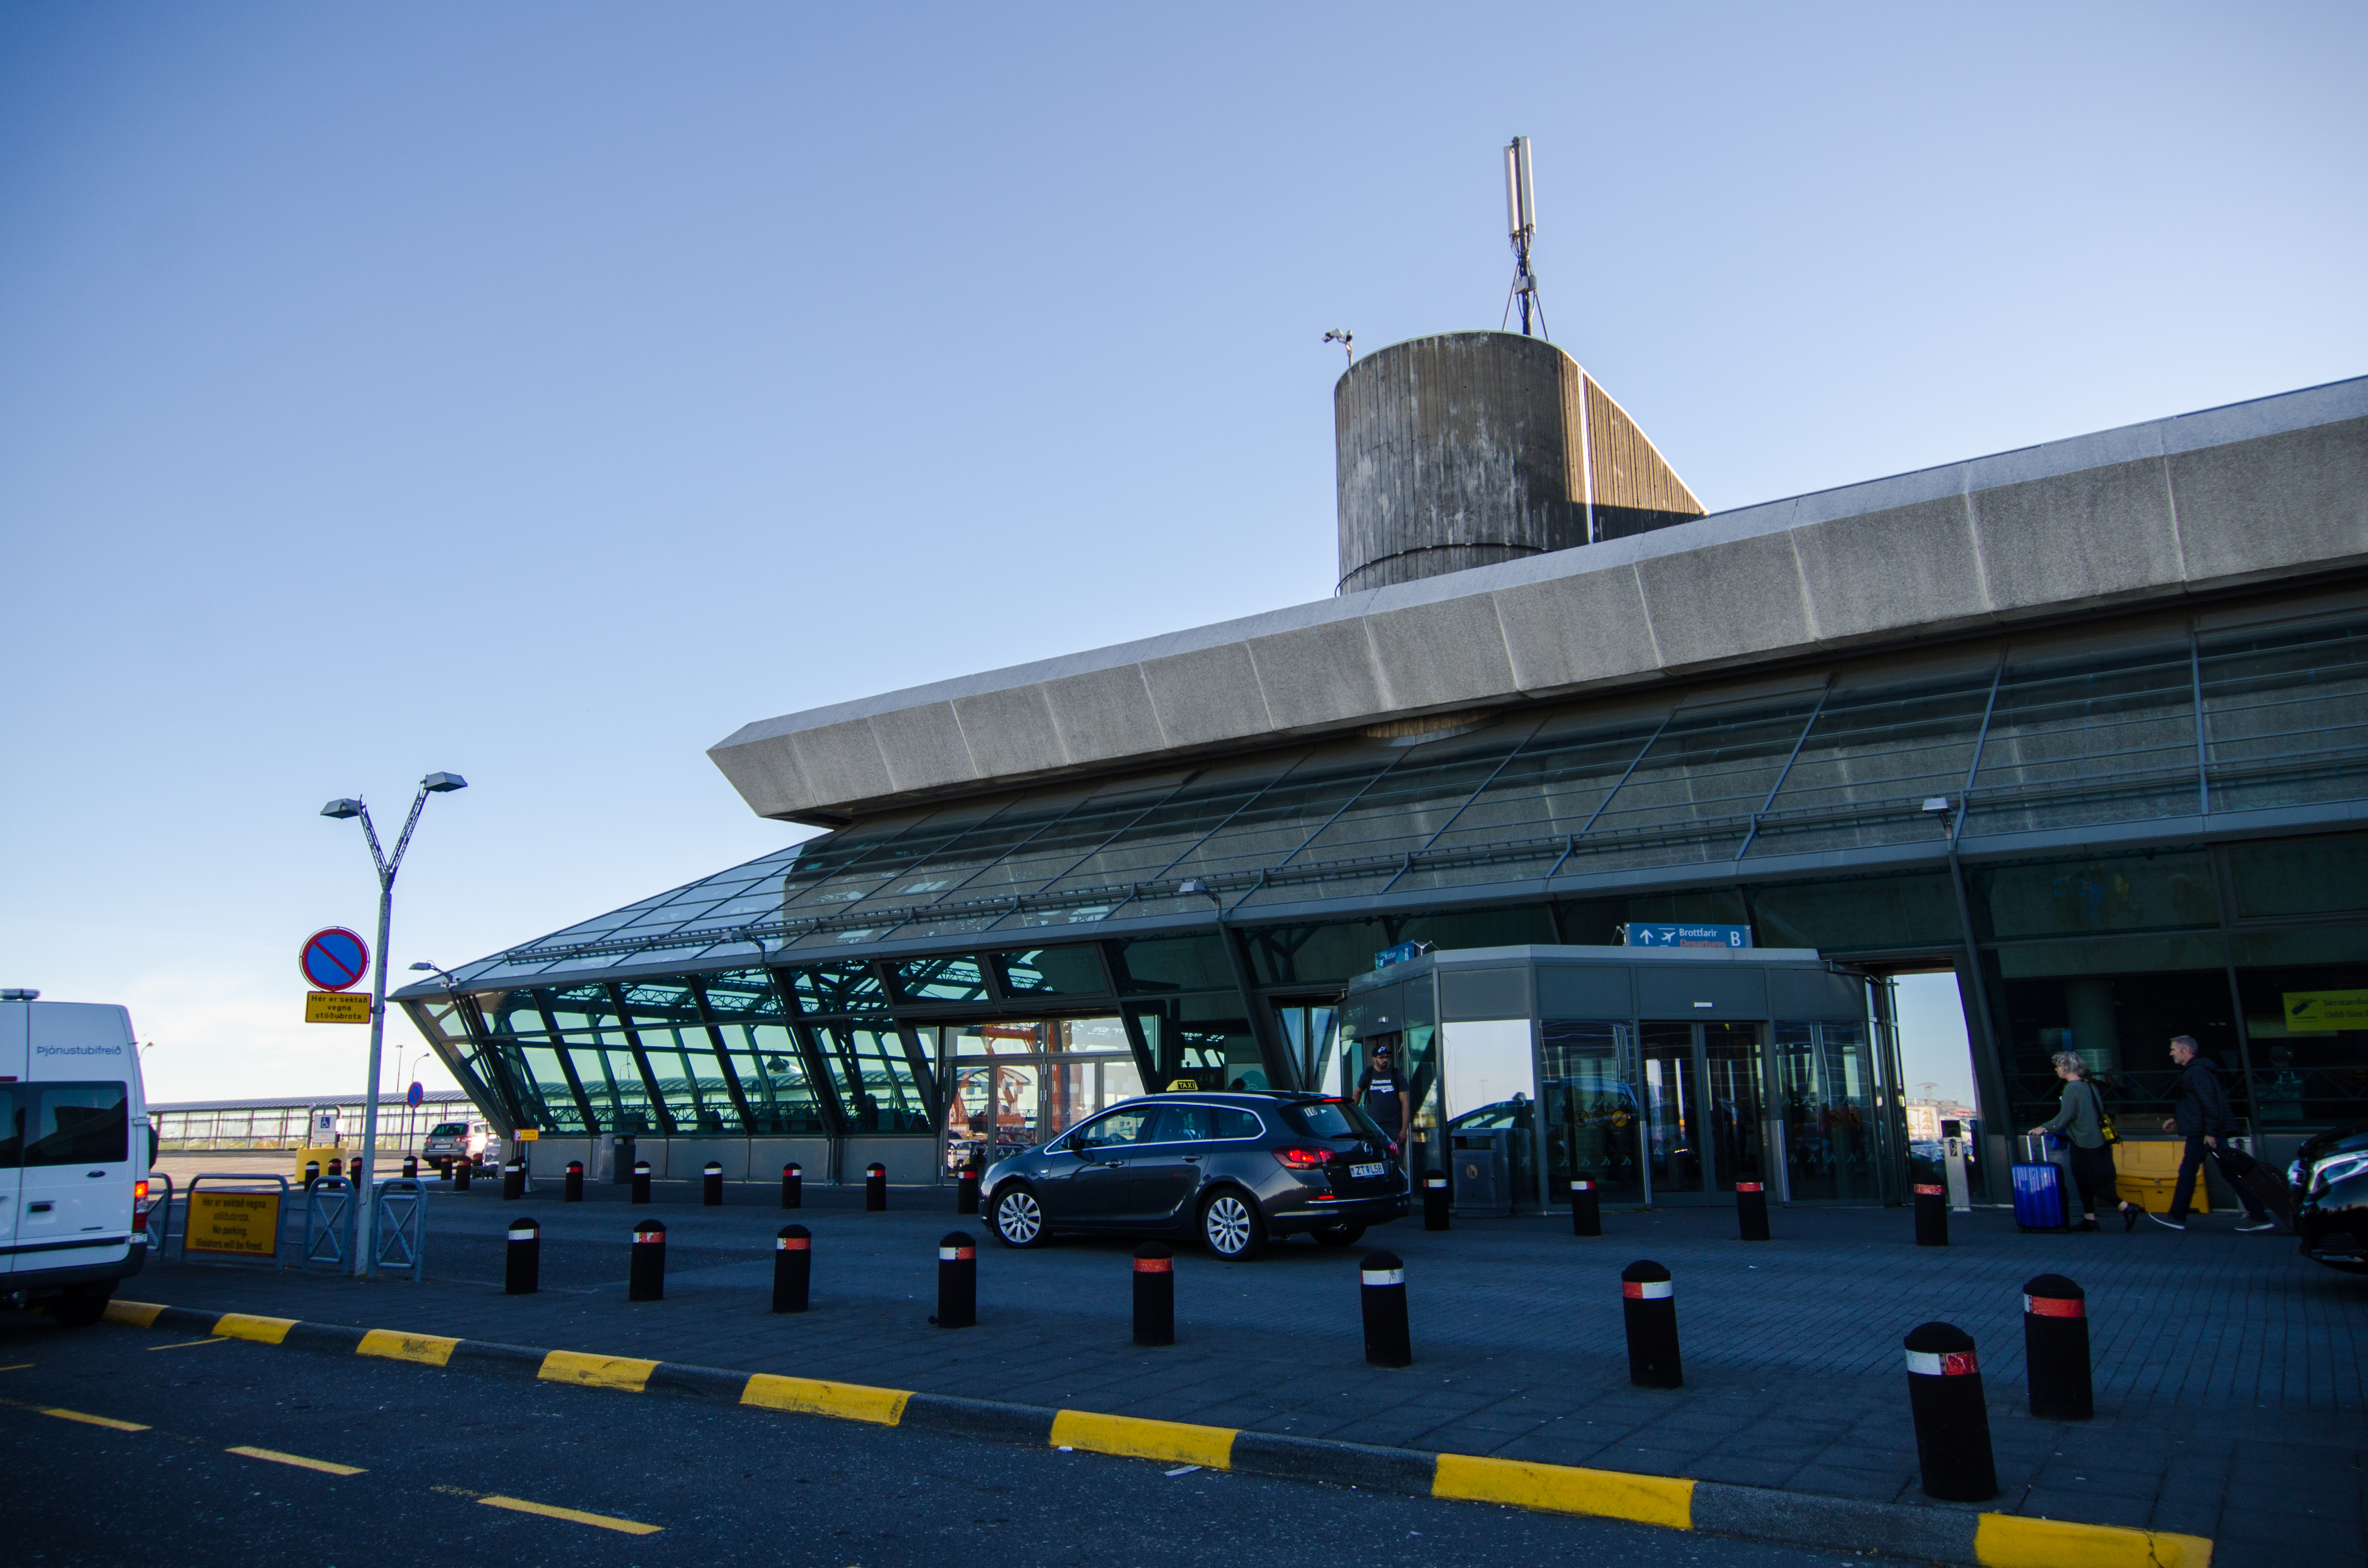 keflavik arrivals departures